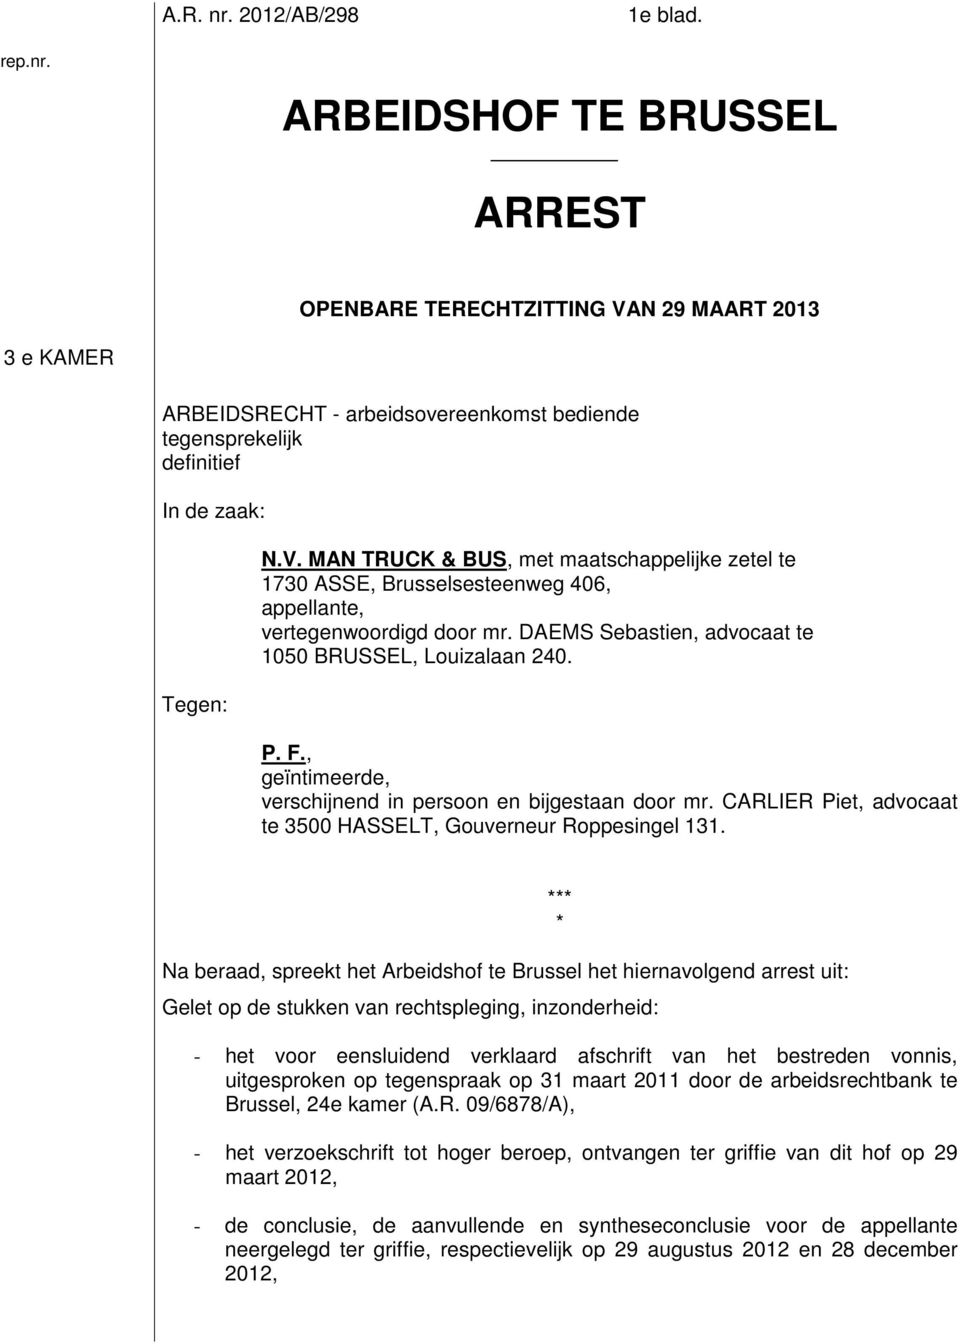 Na beraad, spreekt het Arbeidshof te Brussel het hiernavolgend arrest uit: Gelet op de stukken van rechtspleging, inzonderheid: *** * - het voor eensluidend verklaard afschrift van het bestreden